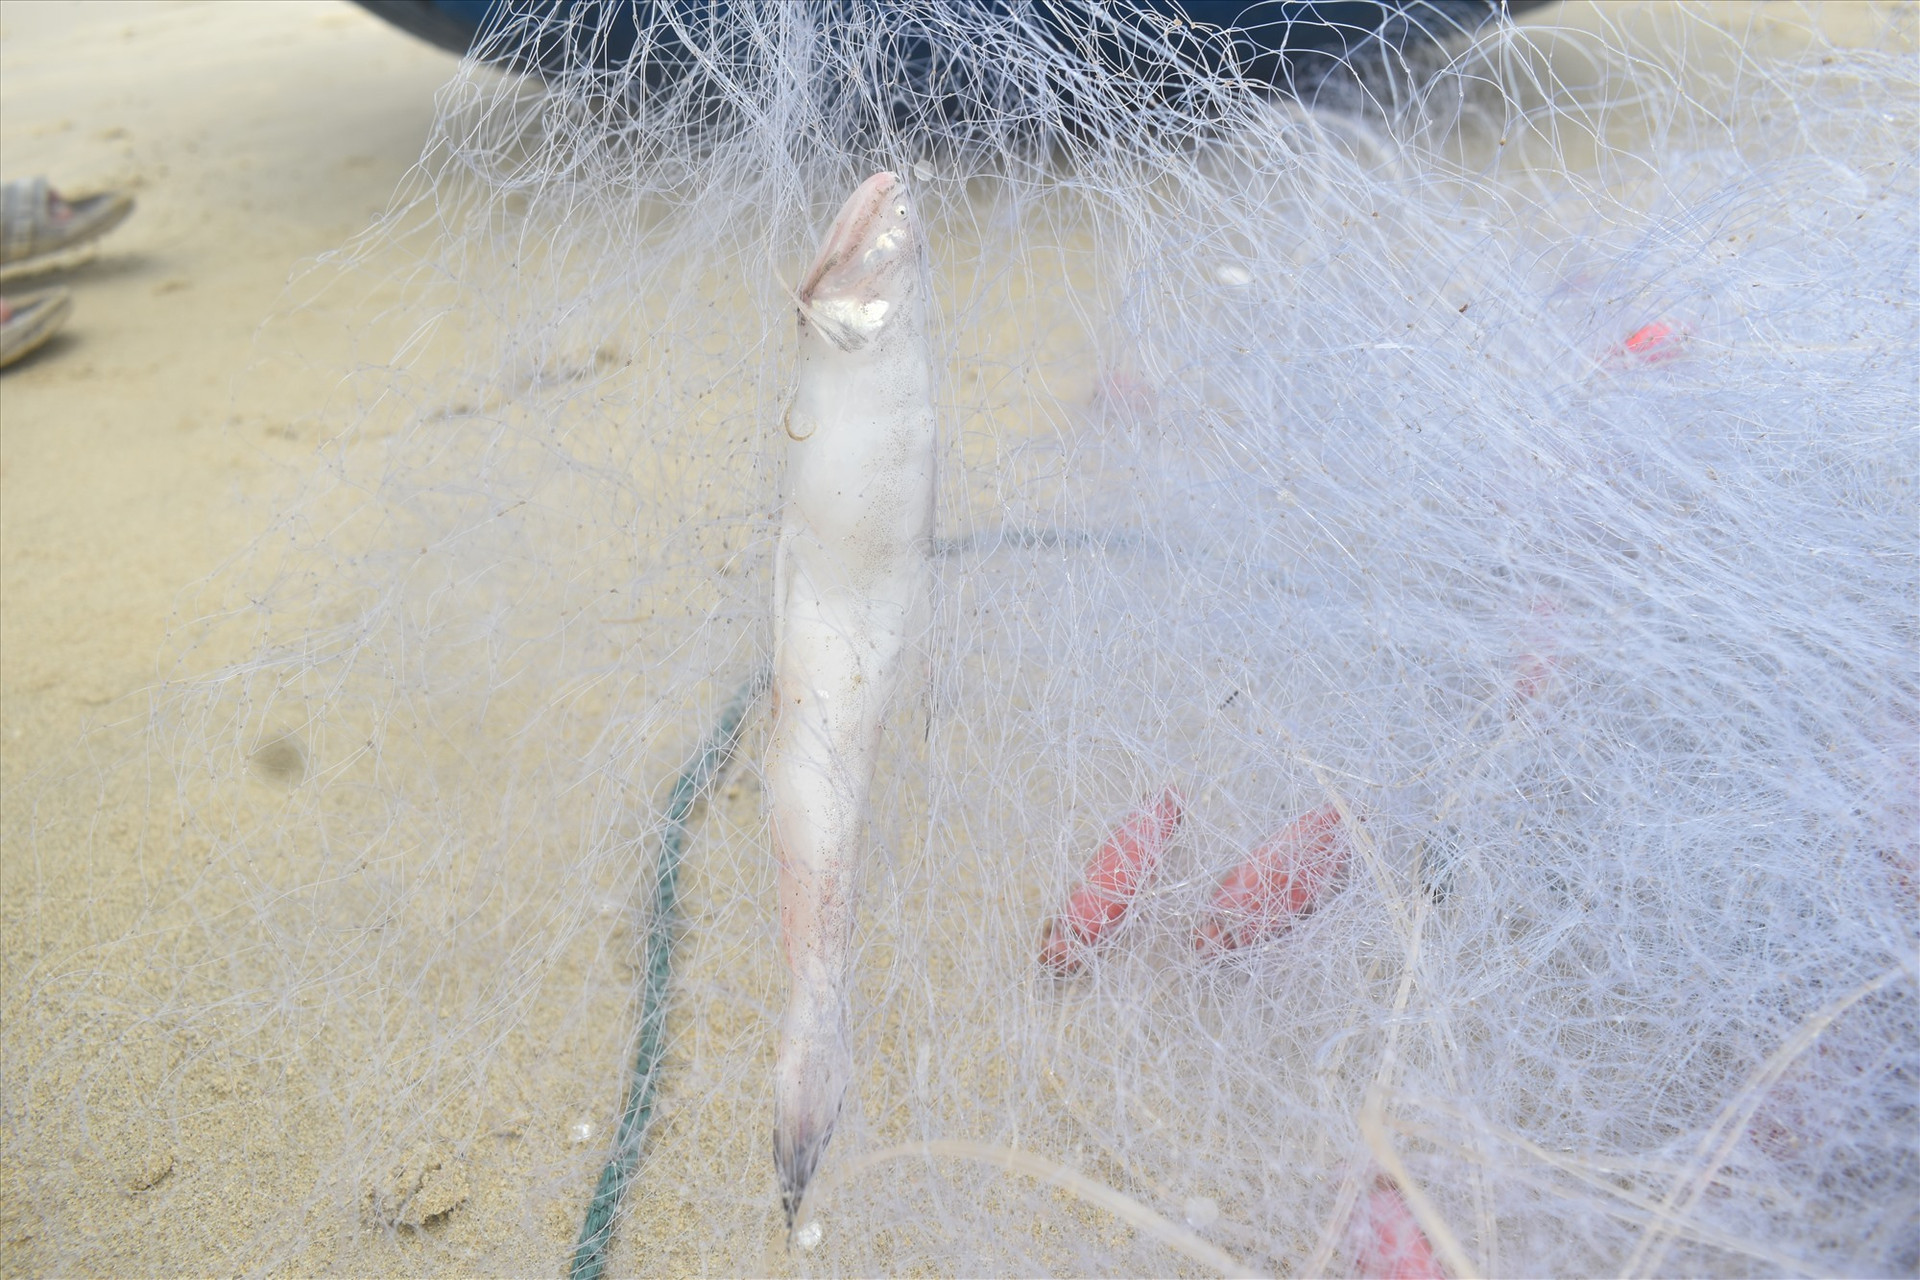 Tấm lưới đánh bắt cá khoai có chiều cao 2,5m, dài tầm 750 - 800m và mỗi ô lưới có diện tích 4cm.